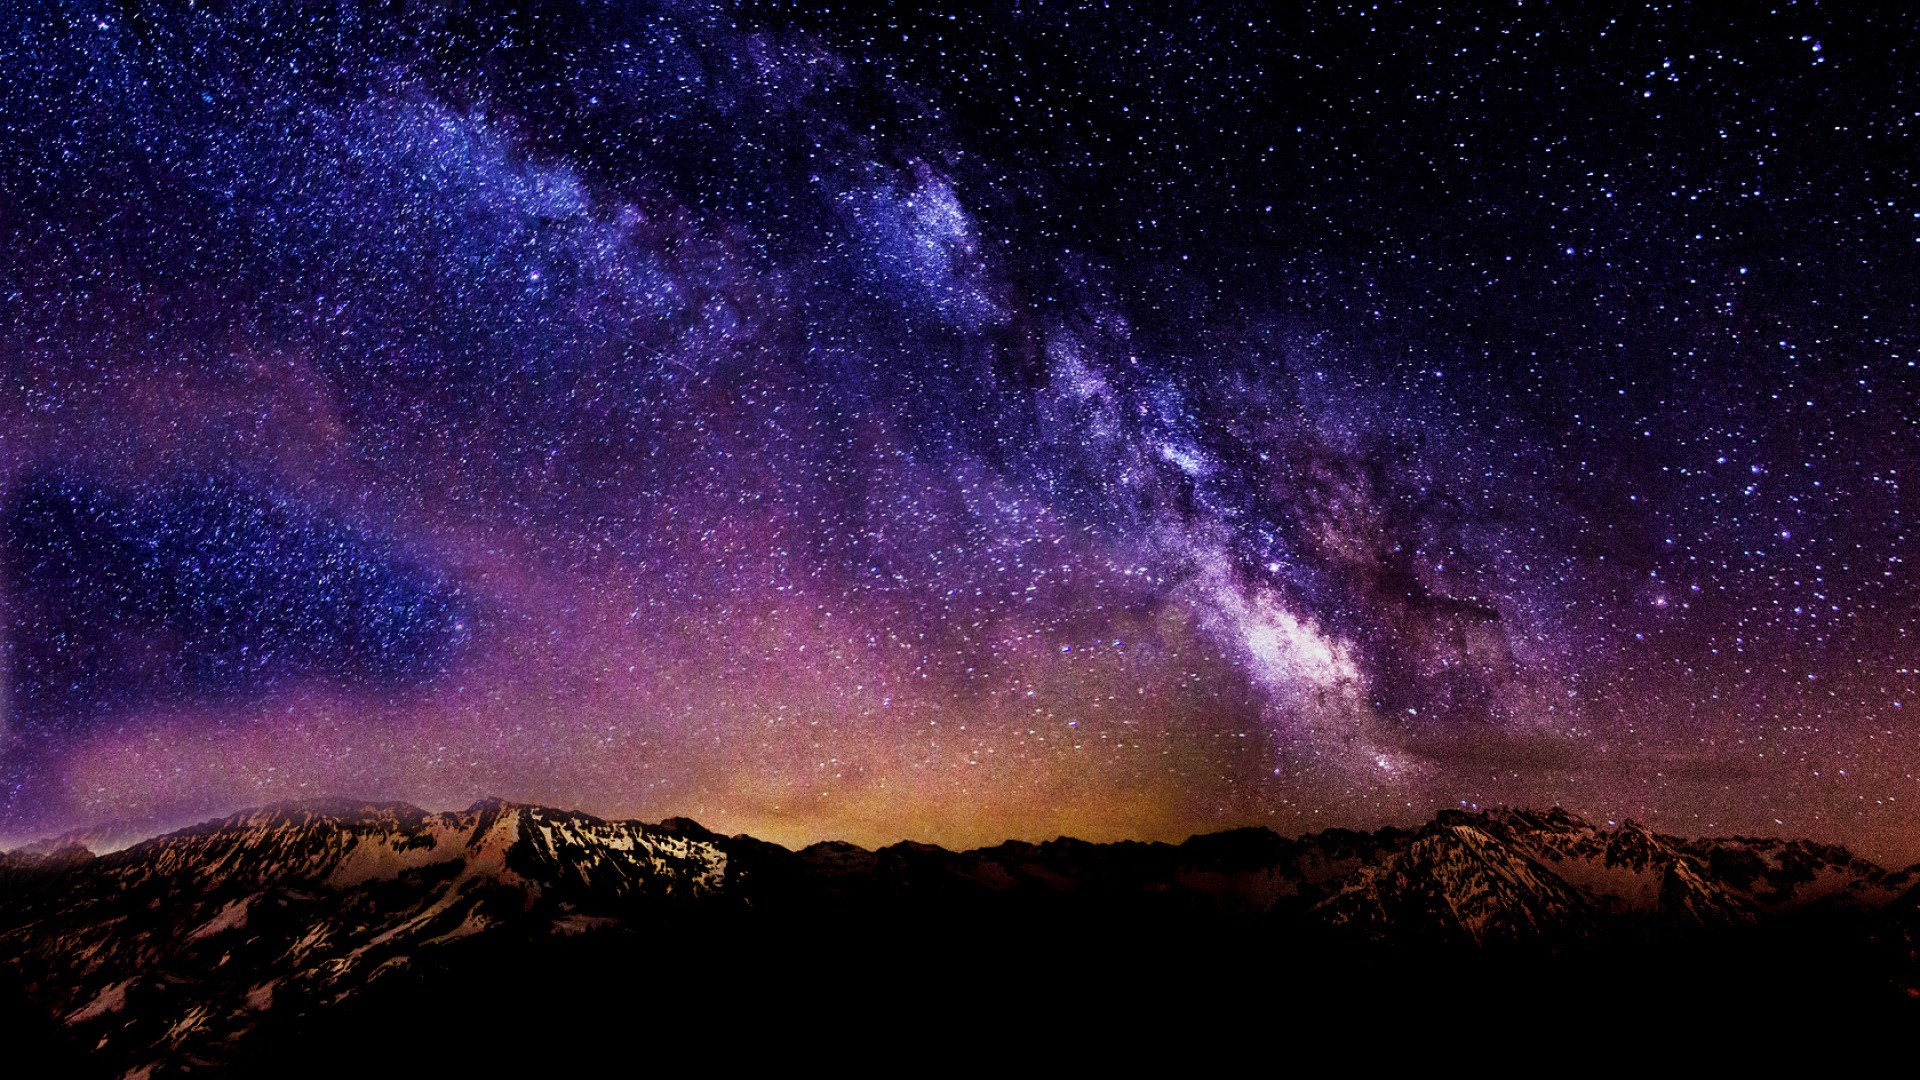 Starry Night Sky Desktop Wallpaper 74 Images